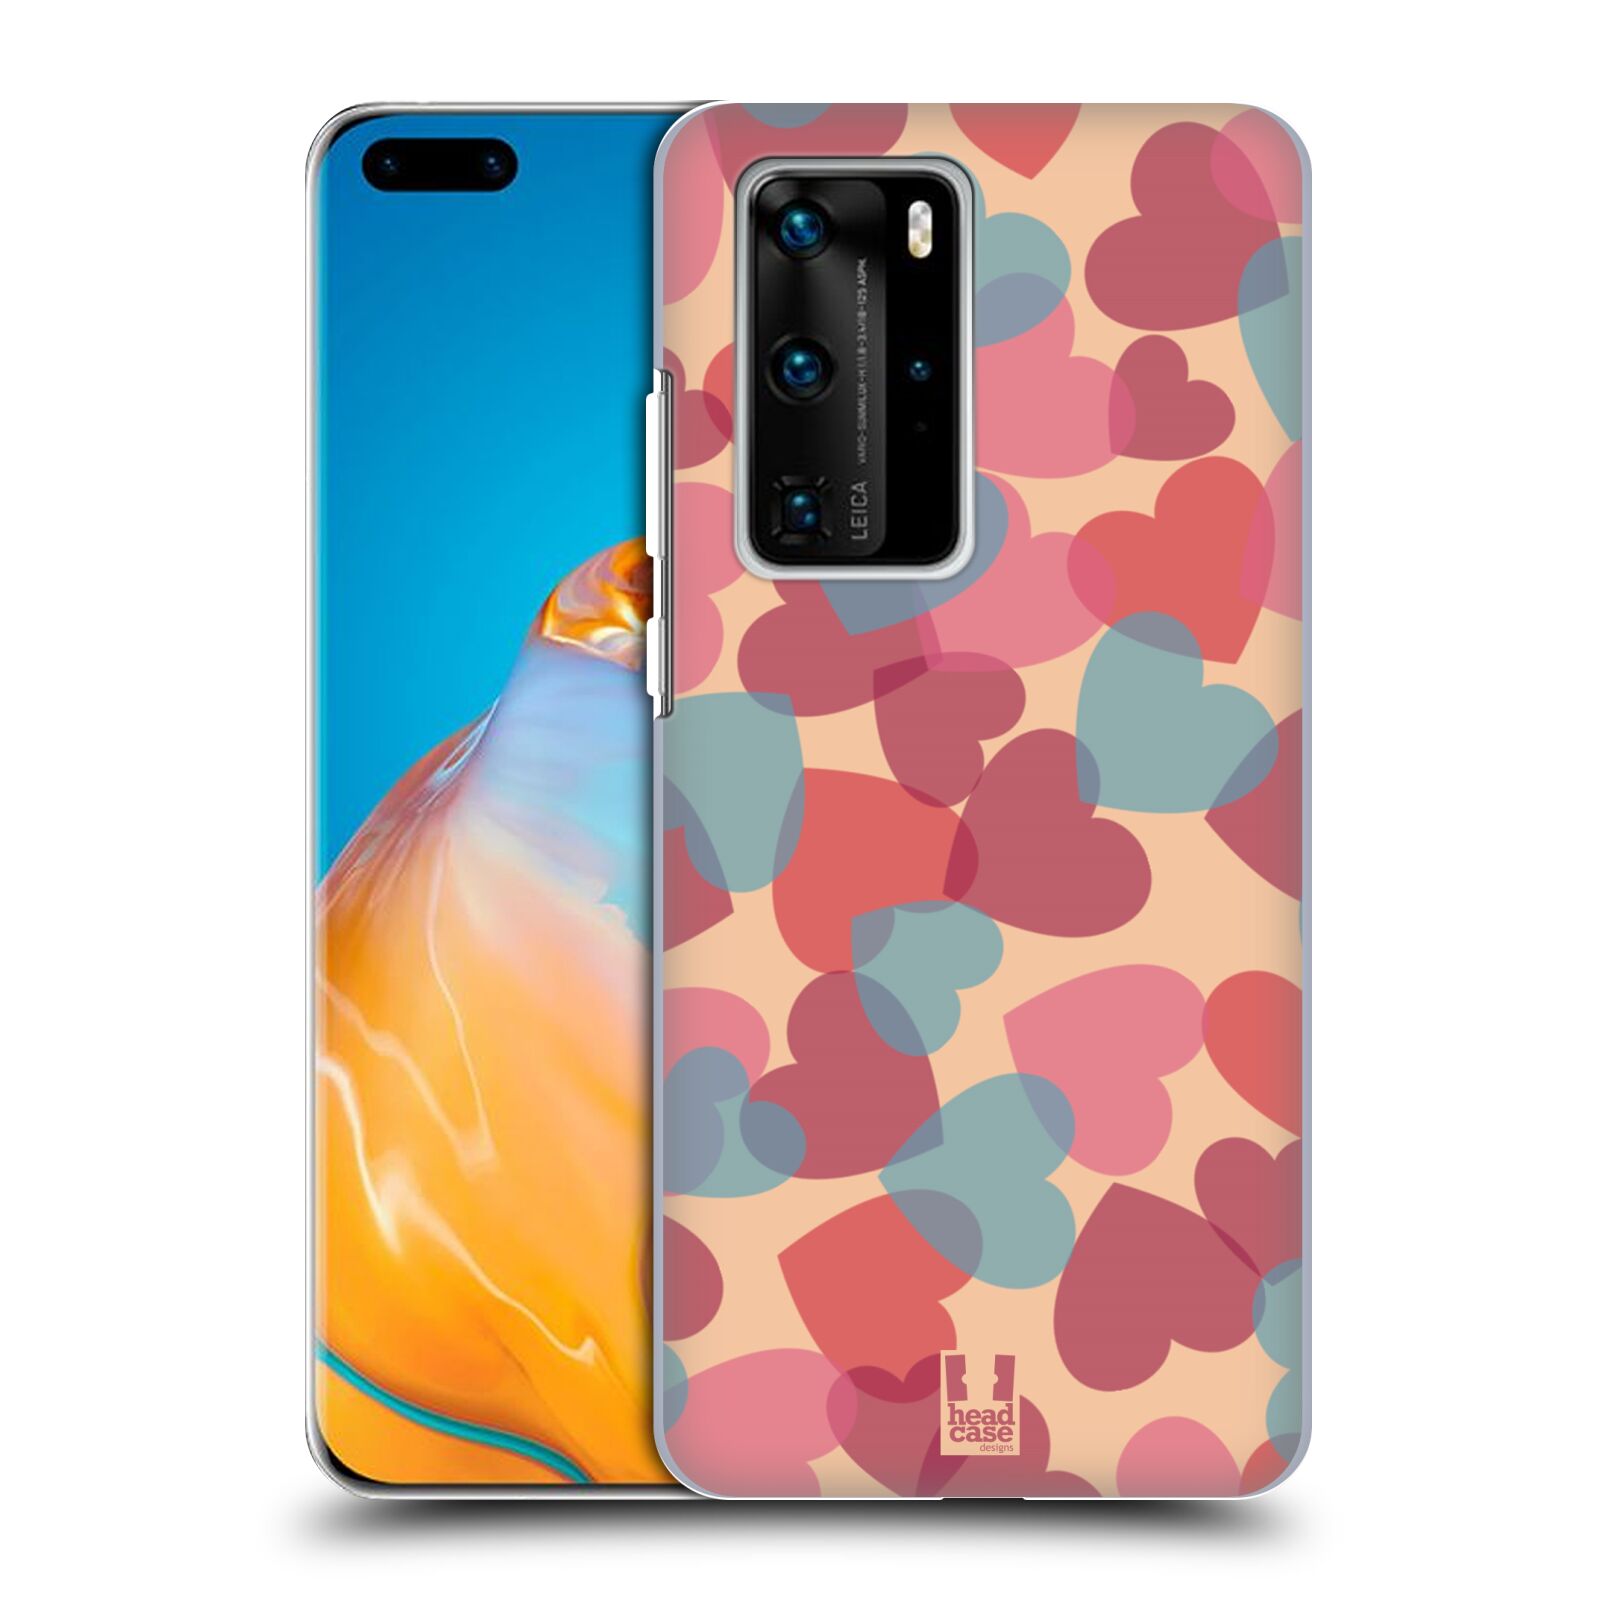 Zadní obal pro mobil Huawei P40 PRO / P40 PRO PLUS - HEAD CASE - Růžová srdíčka kreslený vzor